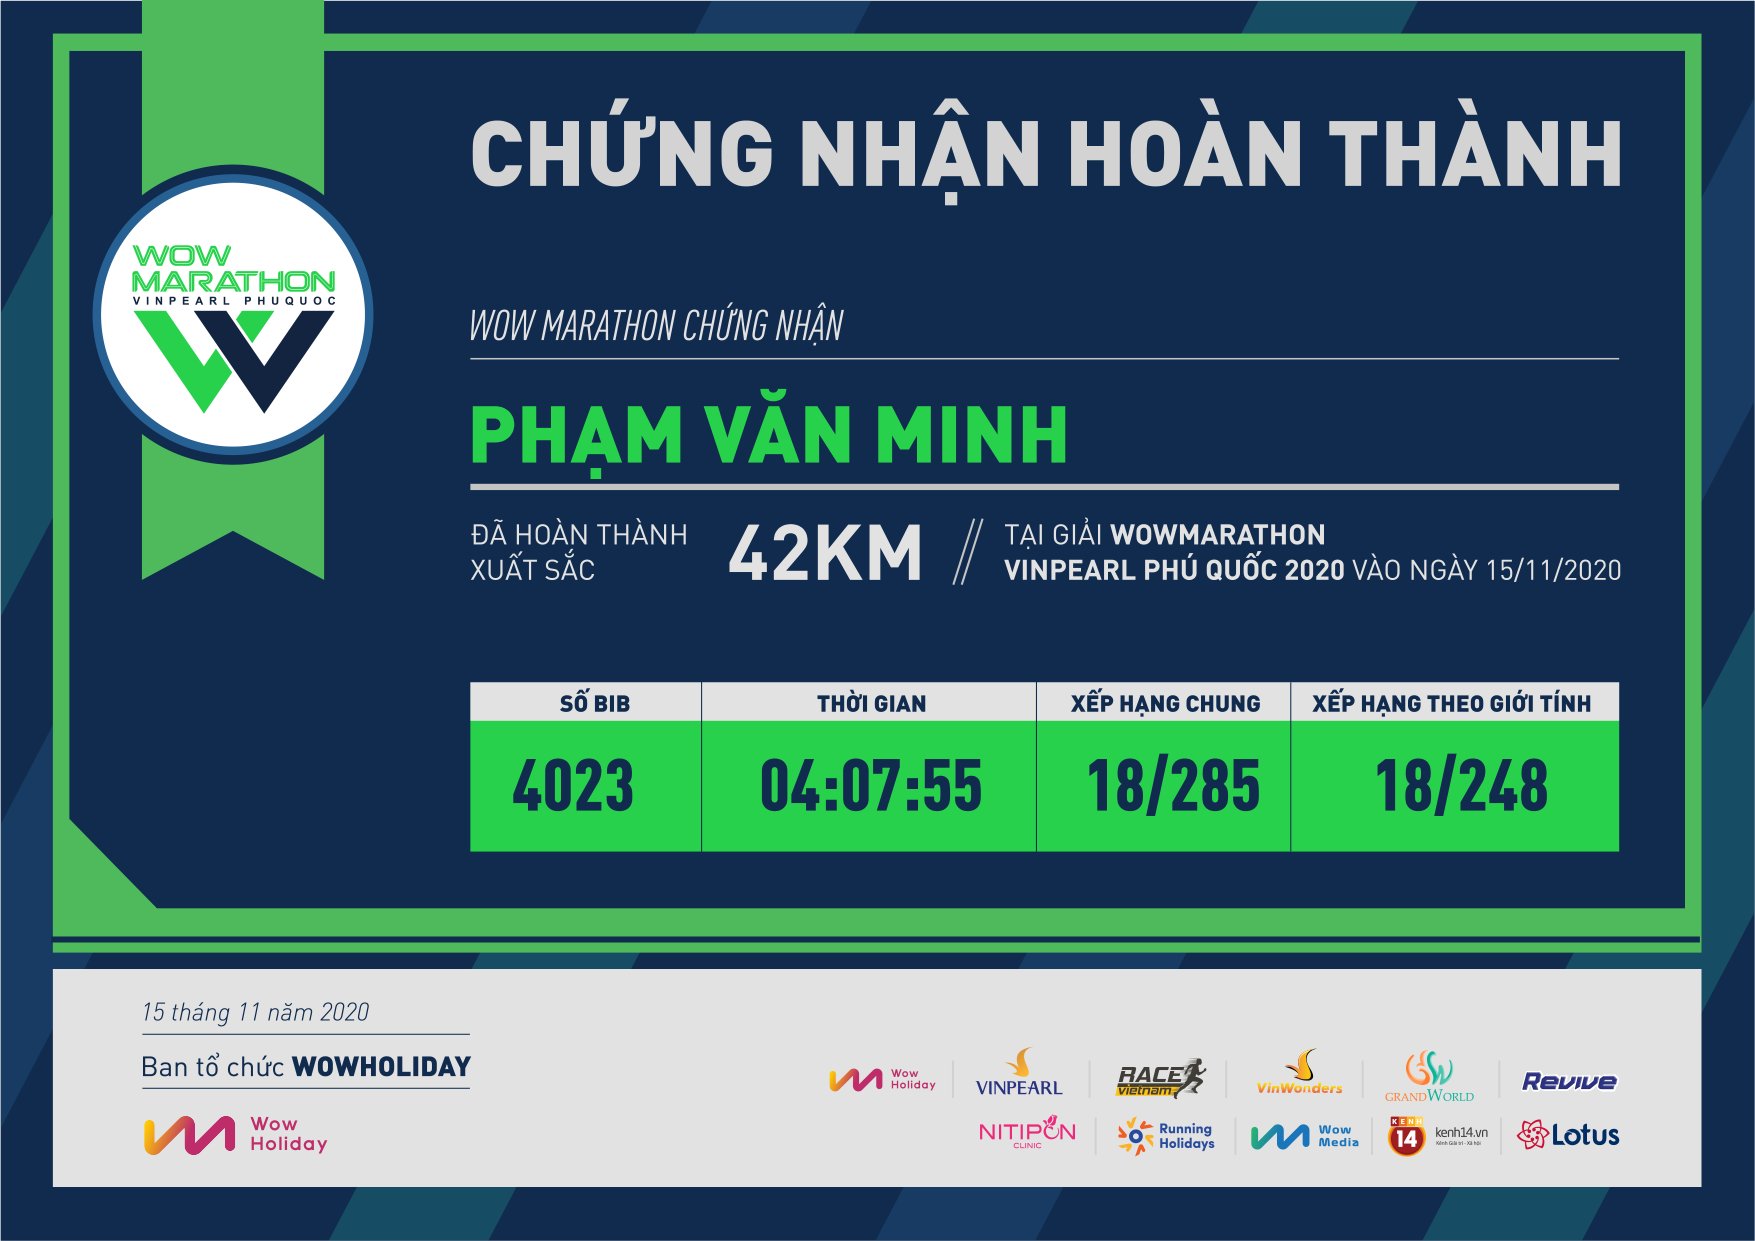 4023 - Phạm Văn Minh